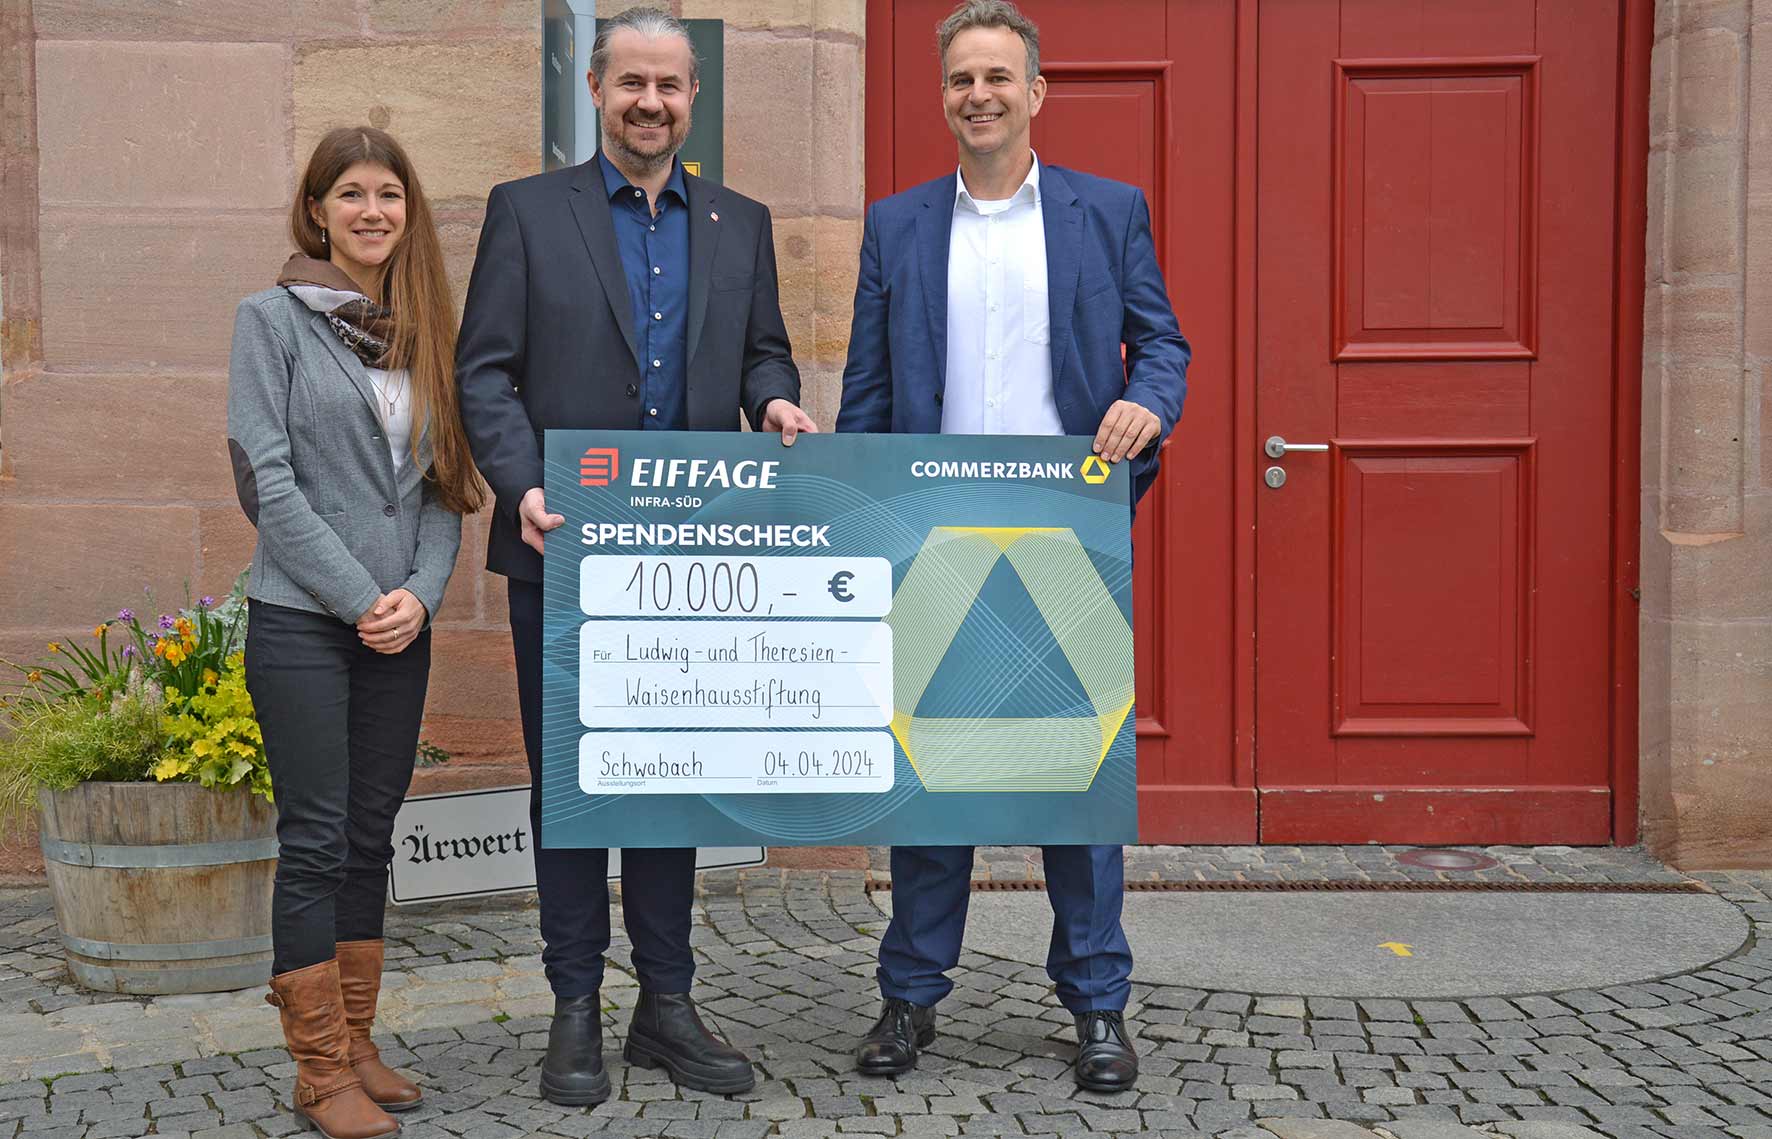 Eine Frau und zwei Männer stehen vor der dunkelroten Rathaustür. Sie halten einen überdimensionalen symbolischen Scheck über 10.000 Euro in Händen.